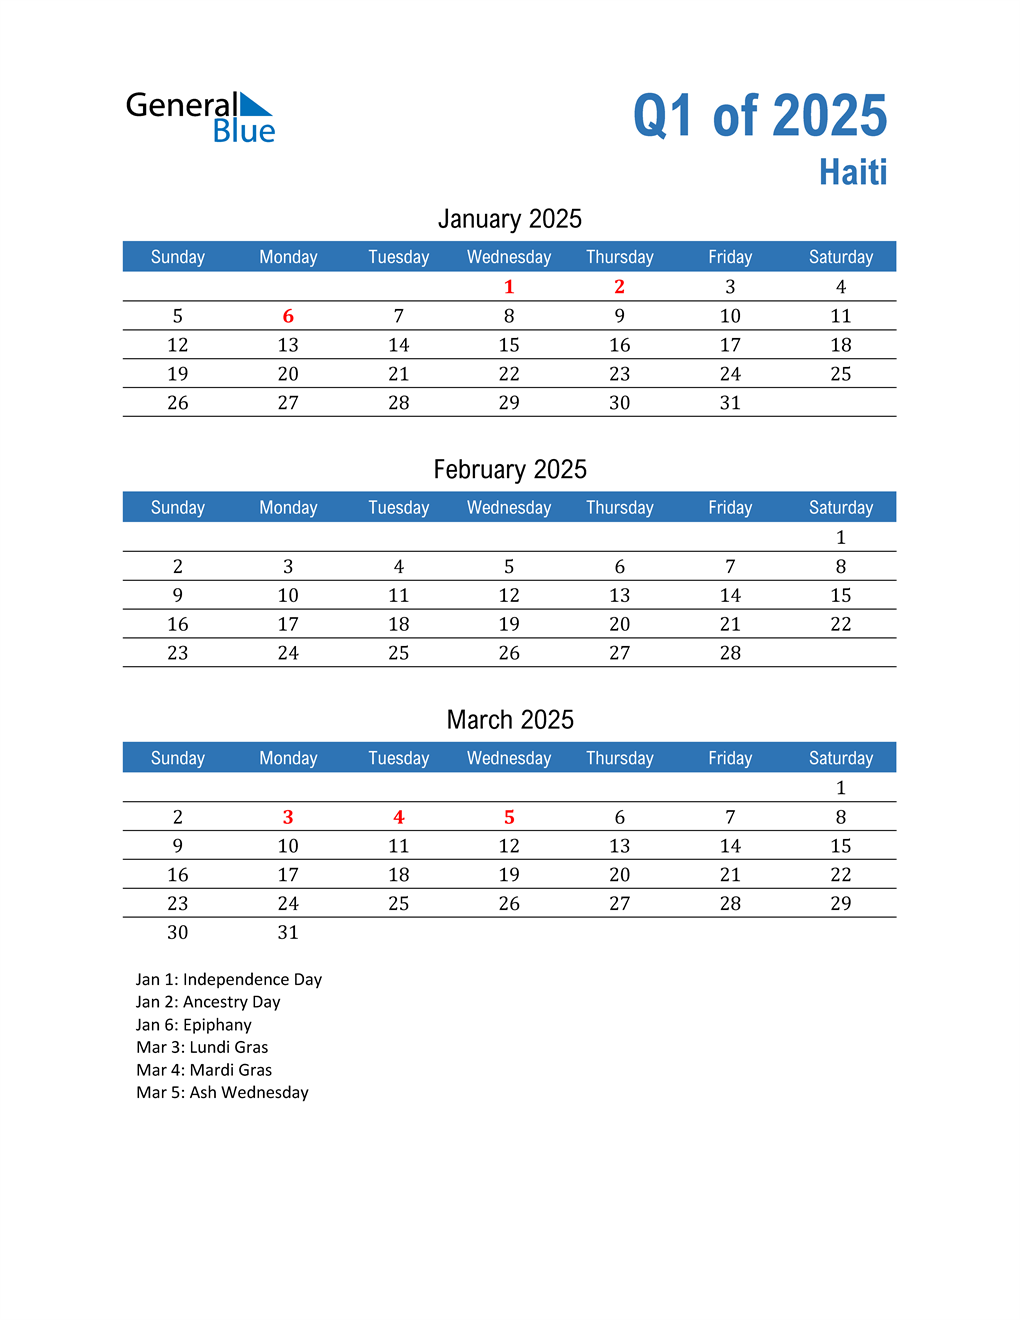  Haiti 2025 Quarterly Calendar 